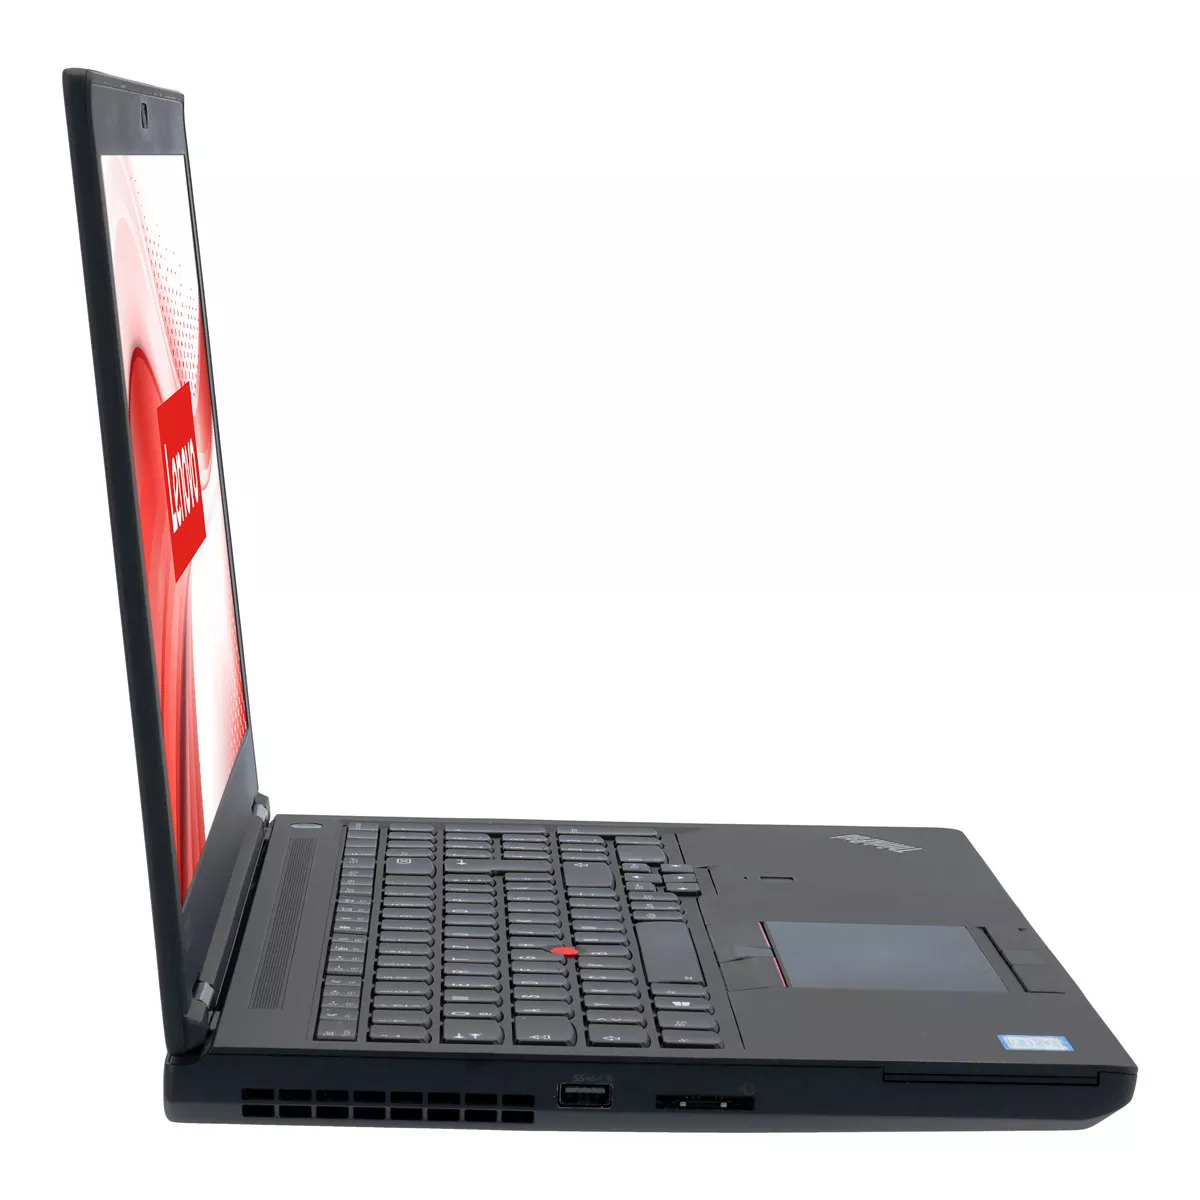 Lenovo ThinkPad P52 Core i7 8750H nVidia Quadro P1000M 32 GB 1 TB M.2 SSD Webcam A